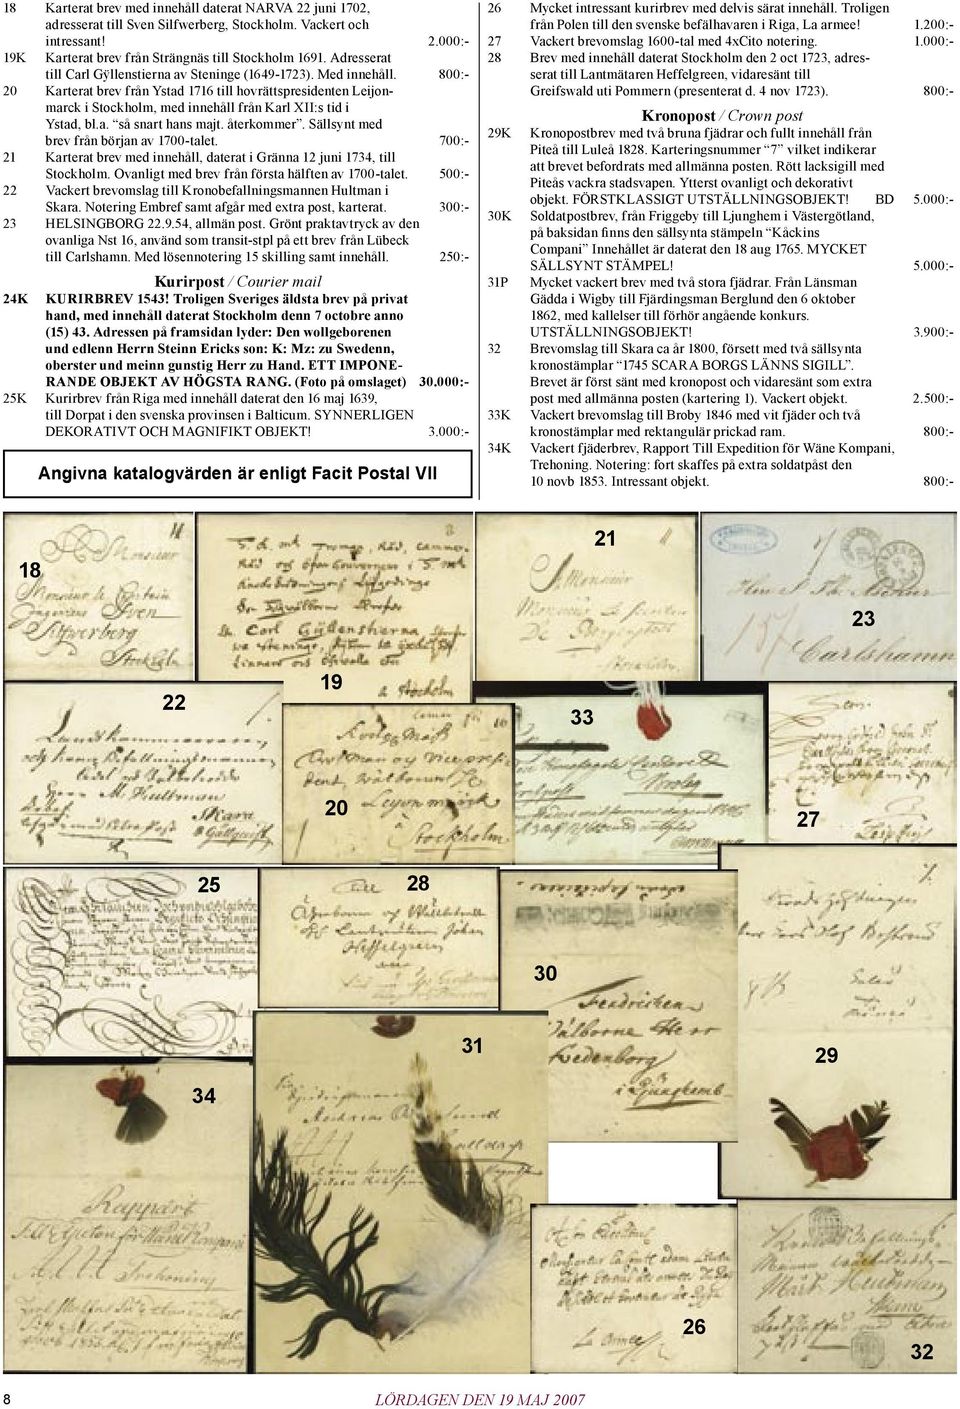 800:- 20 Karterat brev från Ystad 1716 till hovrättspresidenten Leijonmarck i Stockholm, med innehåll från Karl XII:s tid i Ystad, bl.a. så snart hans majt. återkommer.